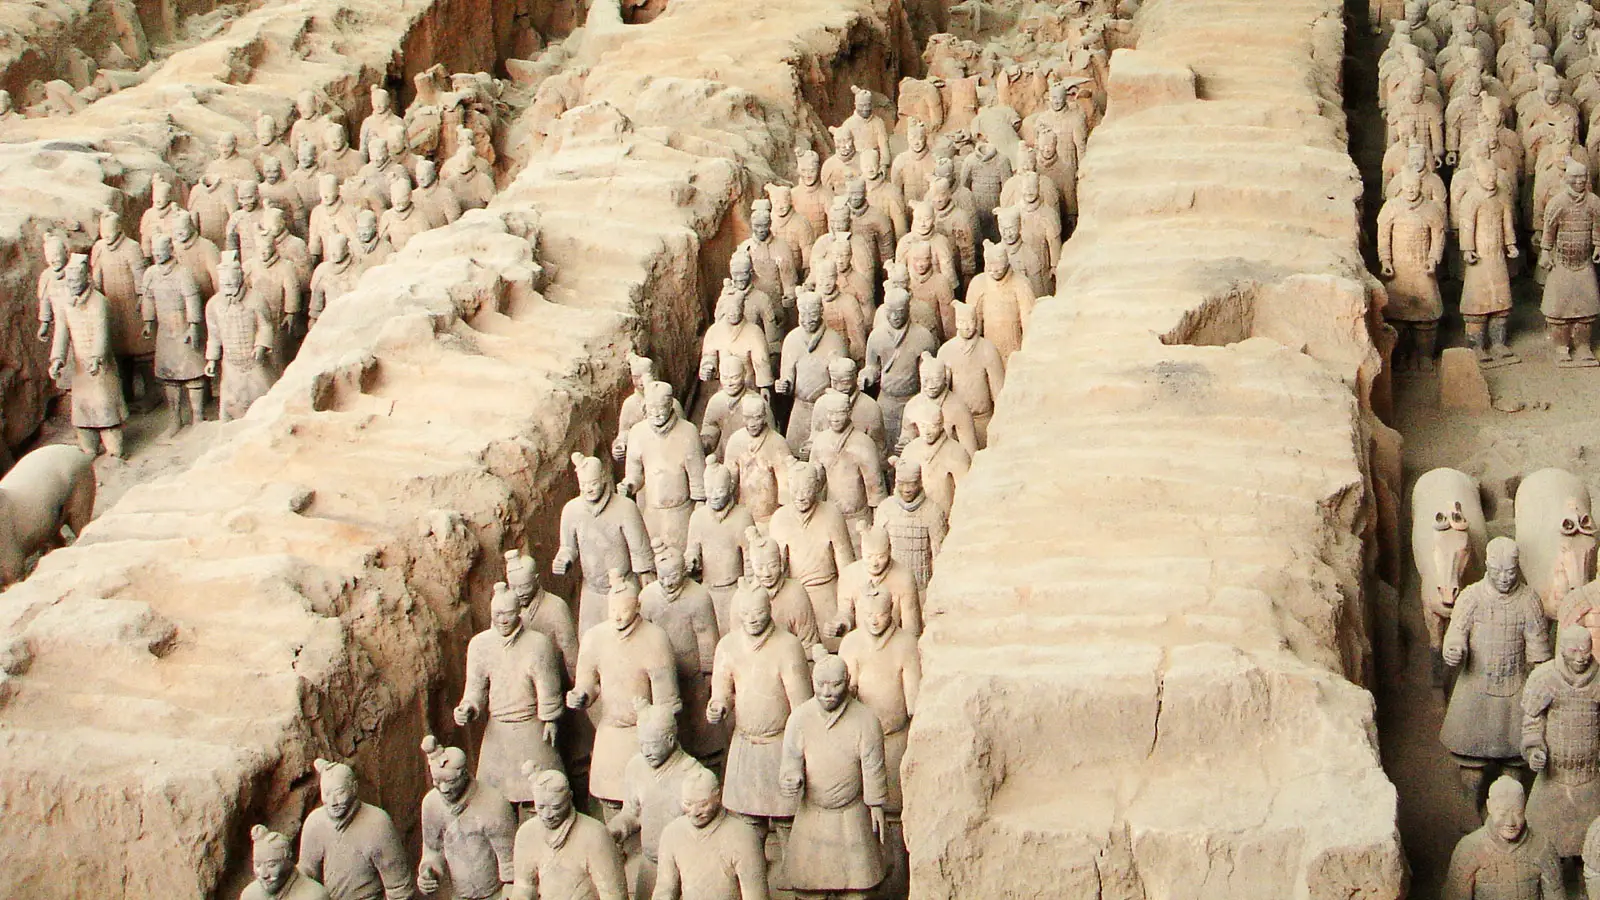 Екскурзия до Китай - Векове и столици - включва посещение на Теракотената армия